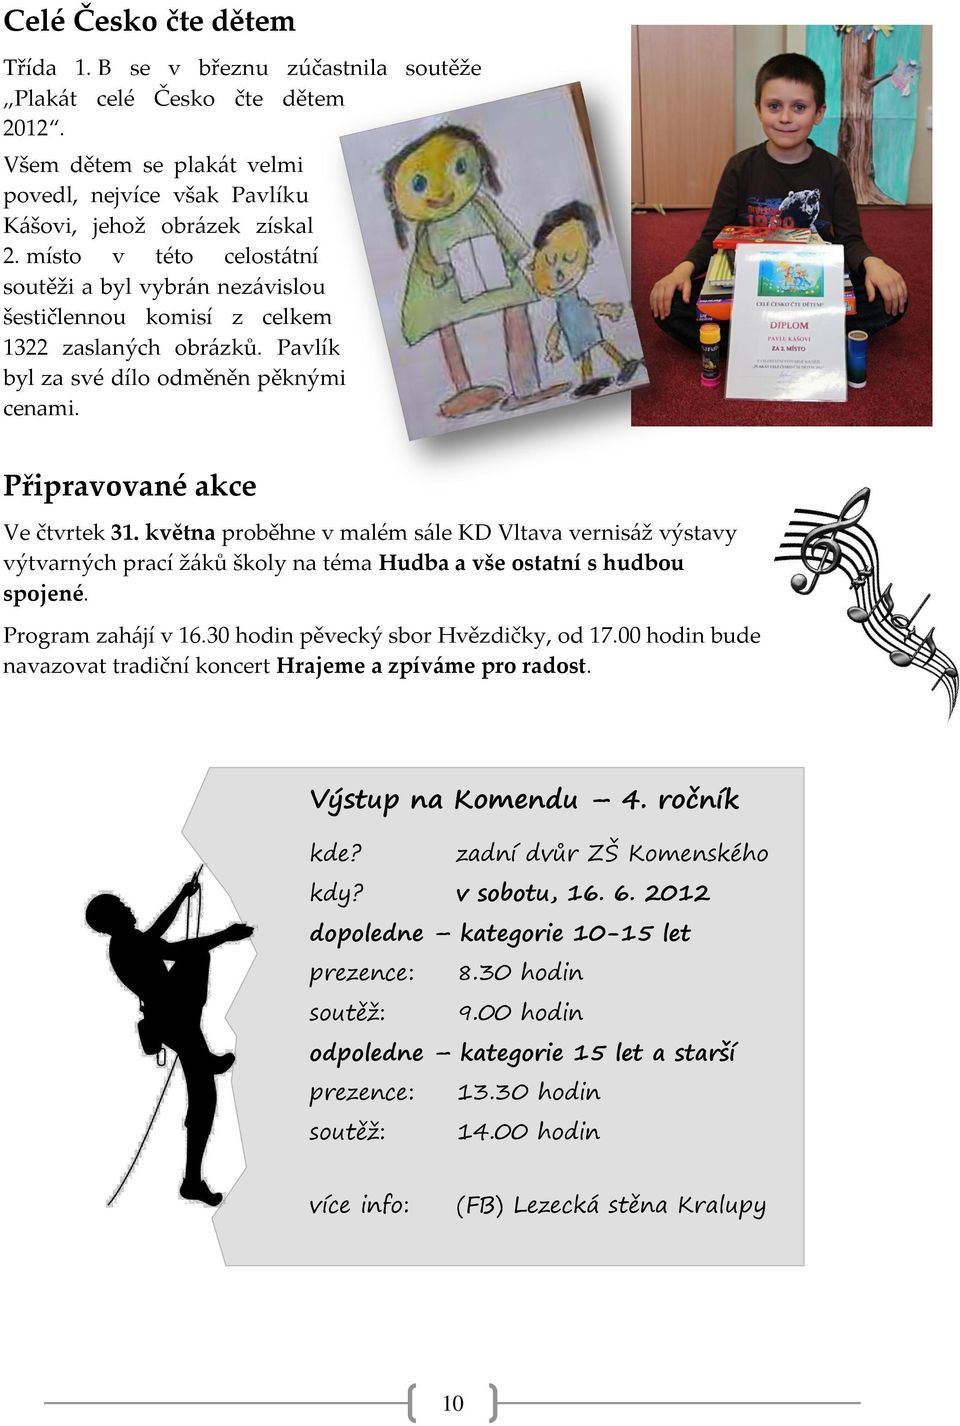 května proběhne v malém sále KD Vltava vernisáž výstavy výtvarných prací žáků školy na téma Hudba a vše ostatní s hudbou spojené. Program zahájí v 16.30 hodin pěvecký sbor Hvězdičky, od 17.